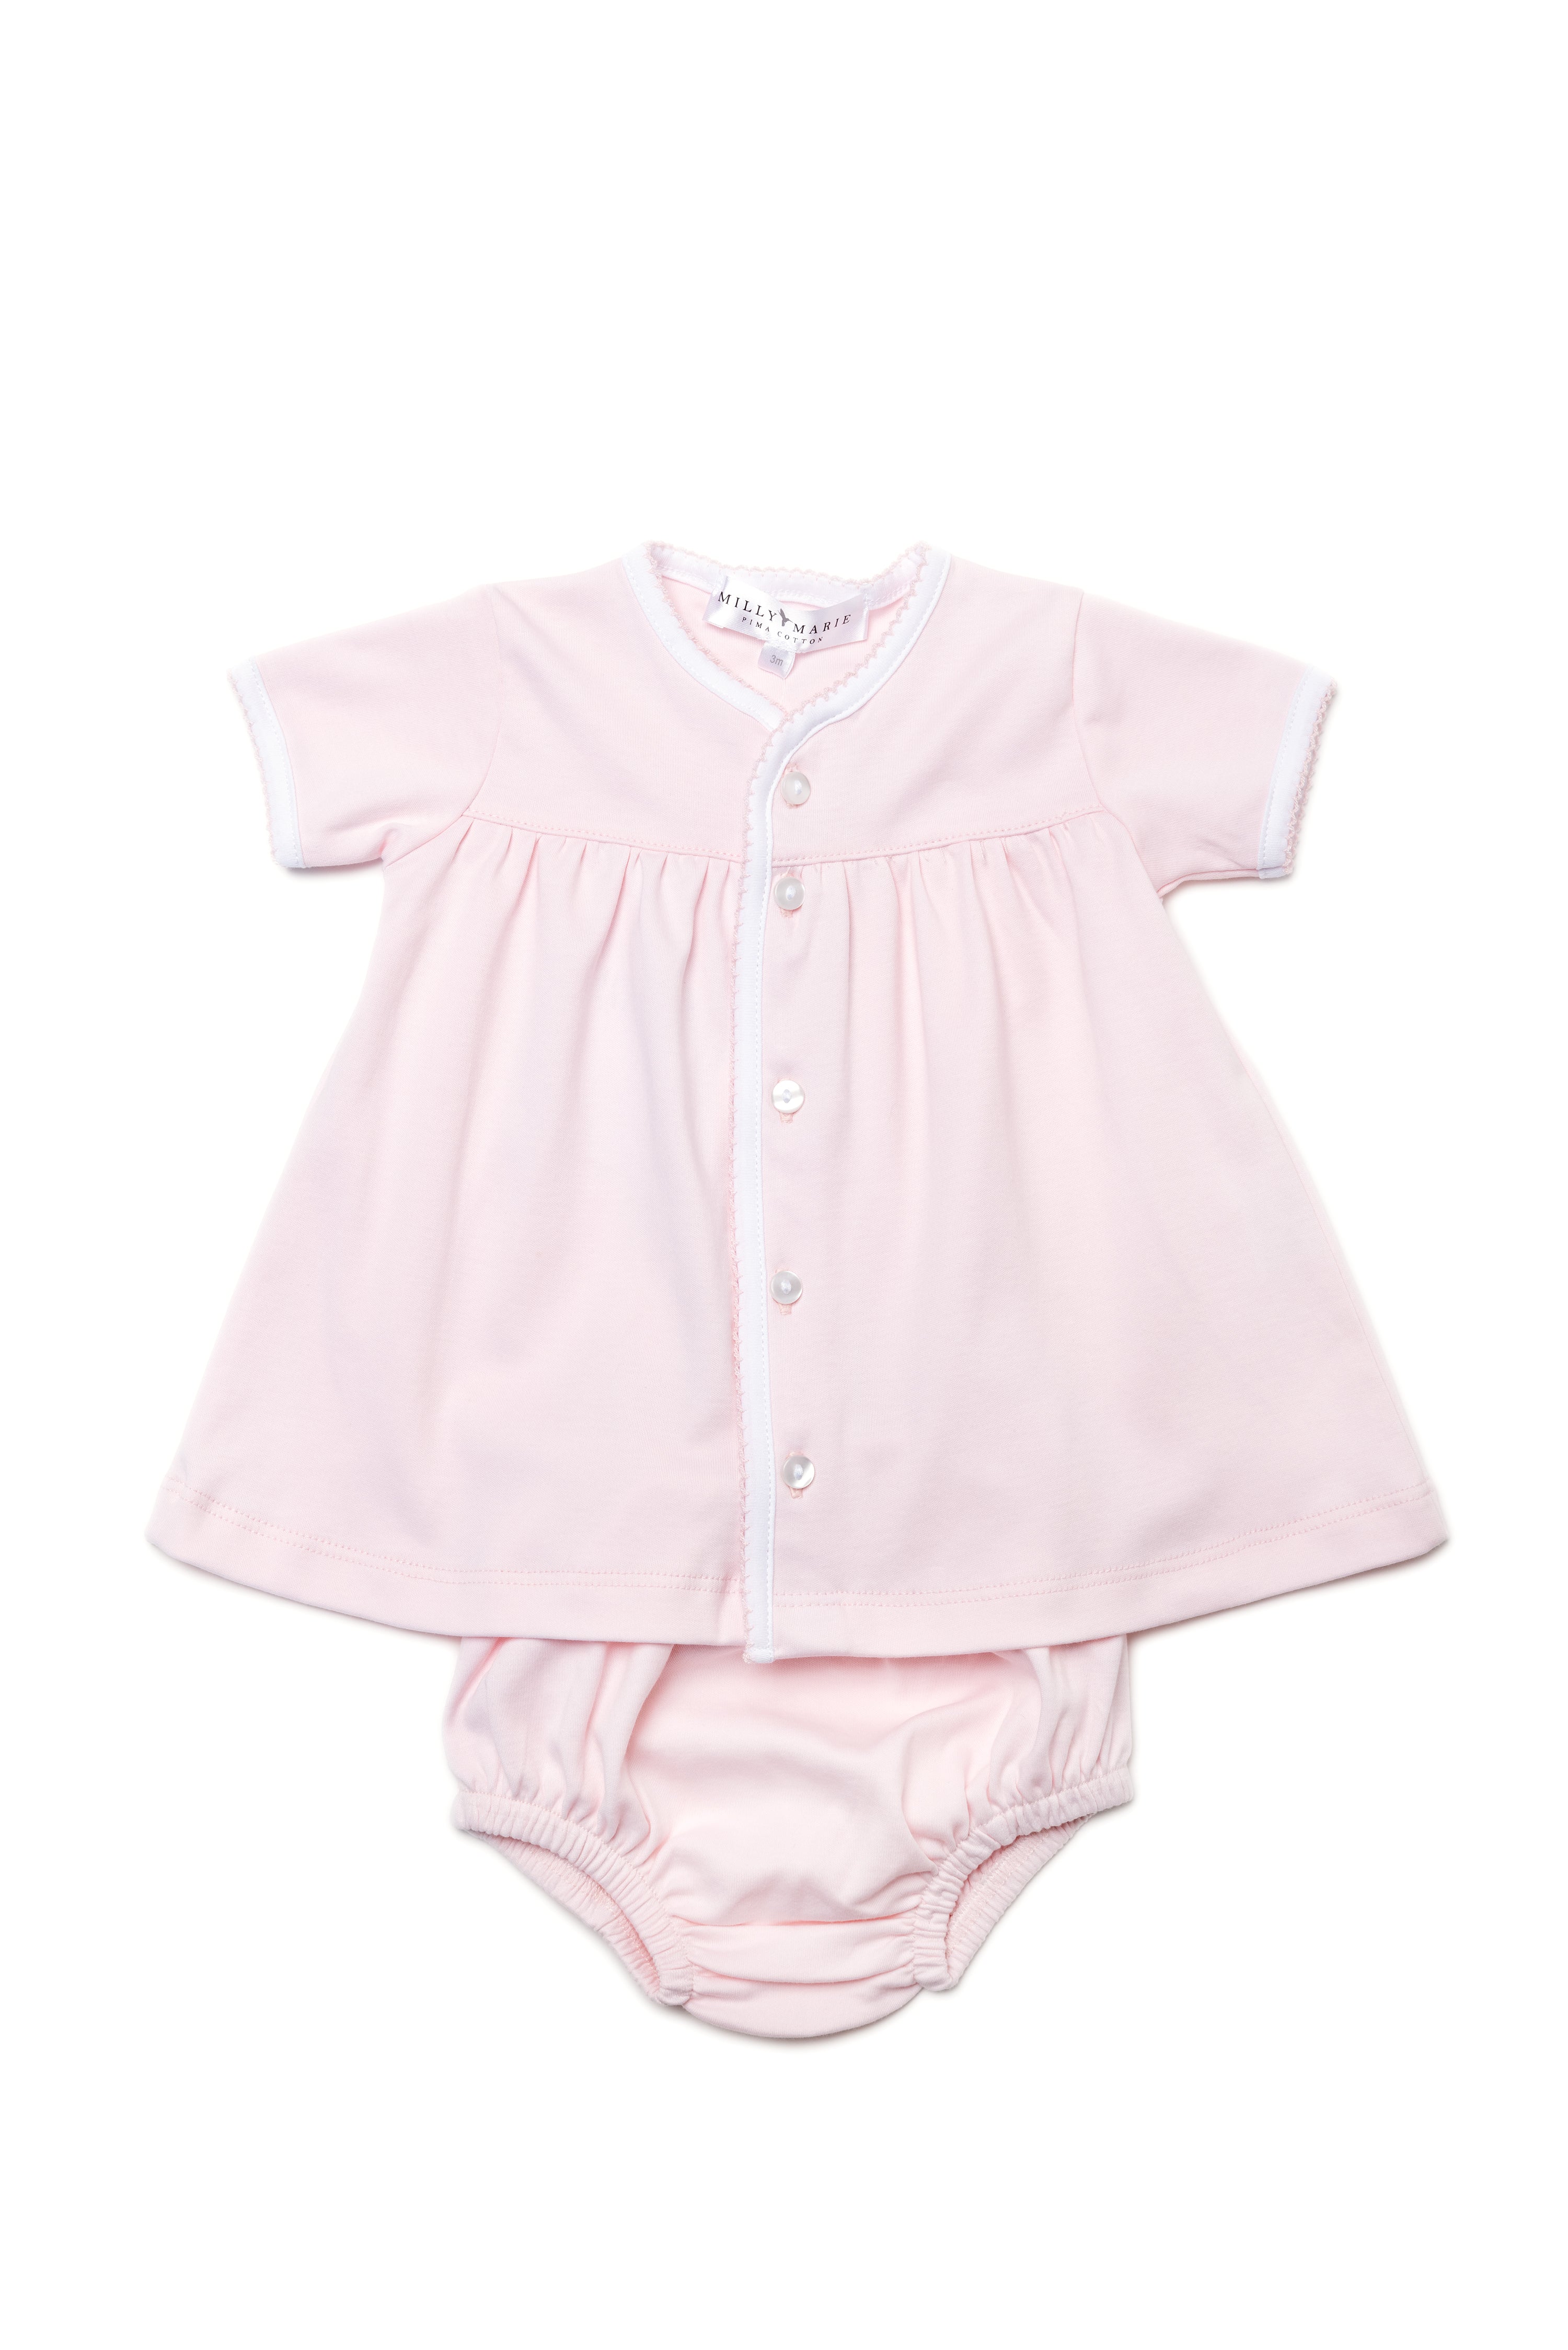 Girls Diaper Set-Pink/Pink & White (Toddler)